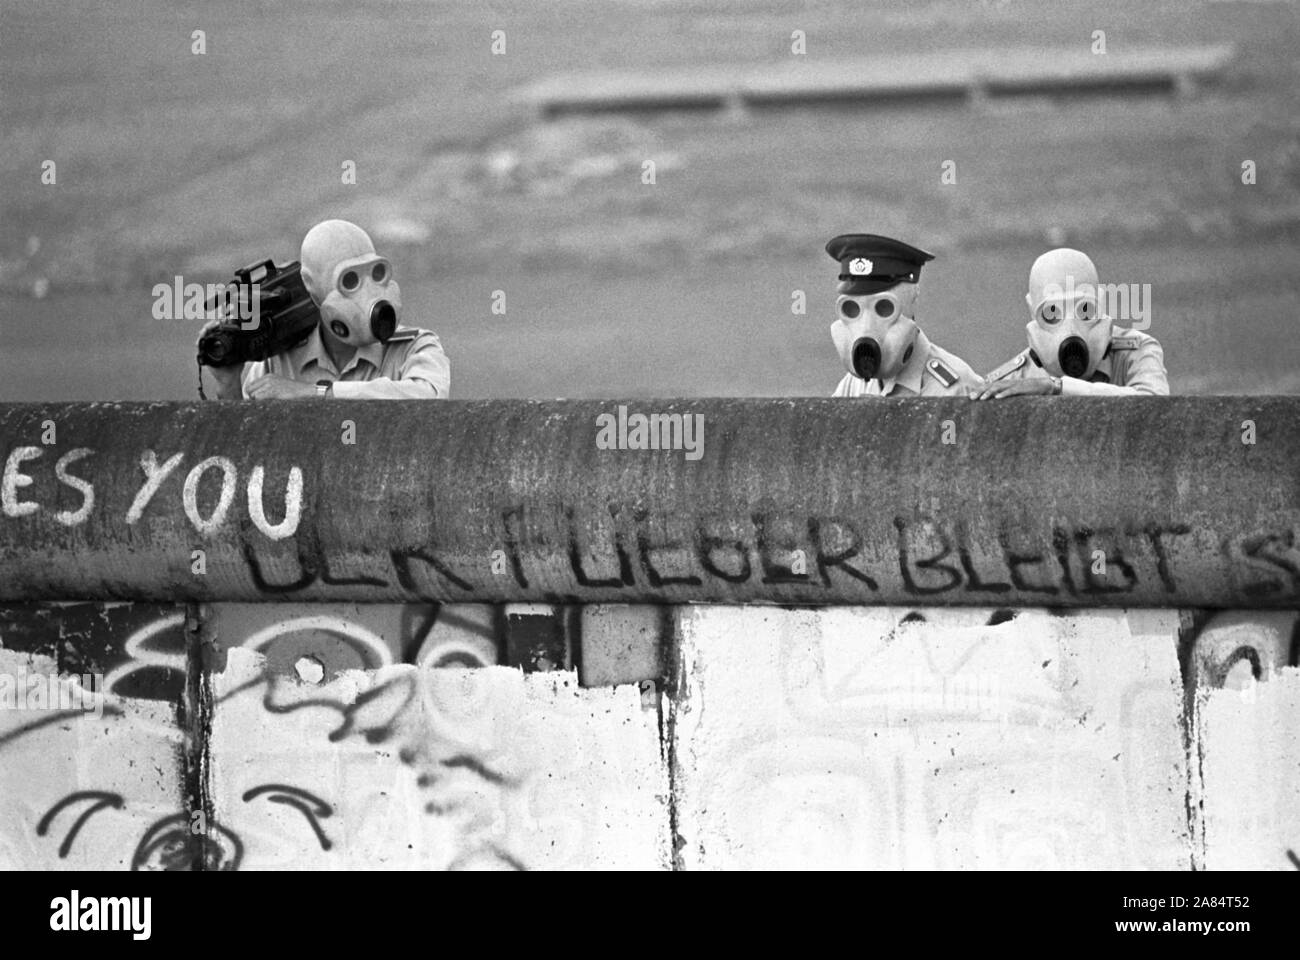 BERLIN - 20. JAHRESTAG DES FALLS DER BERLINER MAUER - Soldaten aus dem Osten Deutschlands MIT ANTI-GASMASKEN AM 21. JULI 1988 - DAS GAS LACRIMOGENO WURDE GEGEN DIE EREIGNISSE UND DIE MARKTEINFÜHRUNG DER SASSI von Demonstranten (DB Metin Yilmaz/Allianz/IPA, BERLIN - 2009-08-23) ps das Foto ist verwendbar in Bezug auf den Kontext, in dem es aufgenommen wurde, und ohne beleidigende Absicht der Anstand des Volkes vertreten Redaktionelle Nutzung Stockfoto